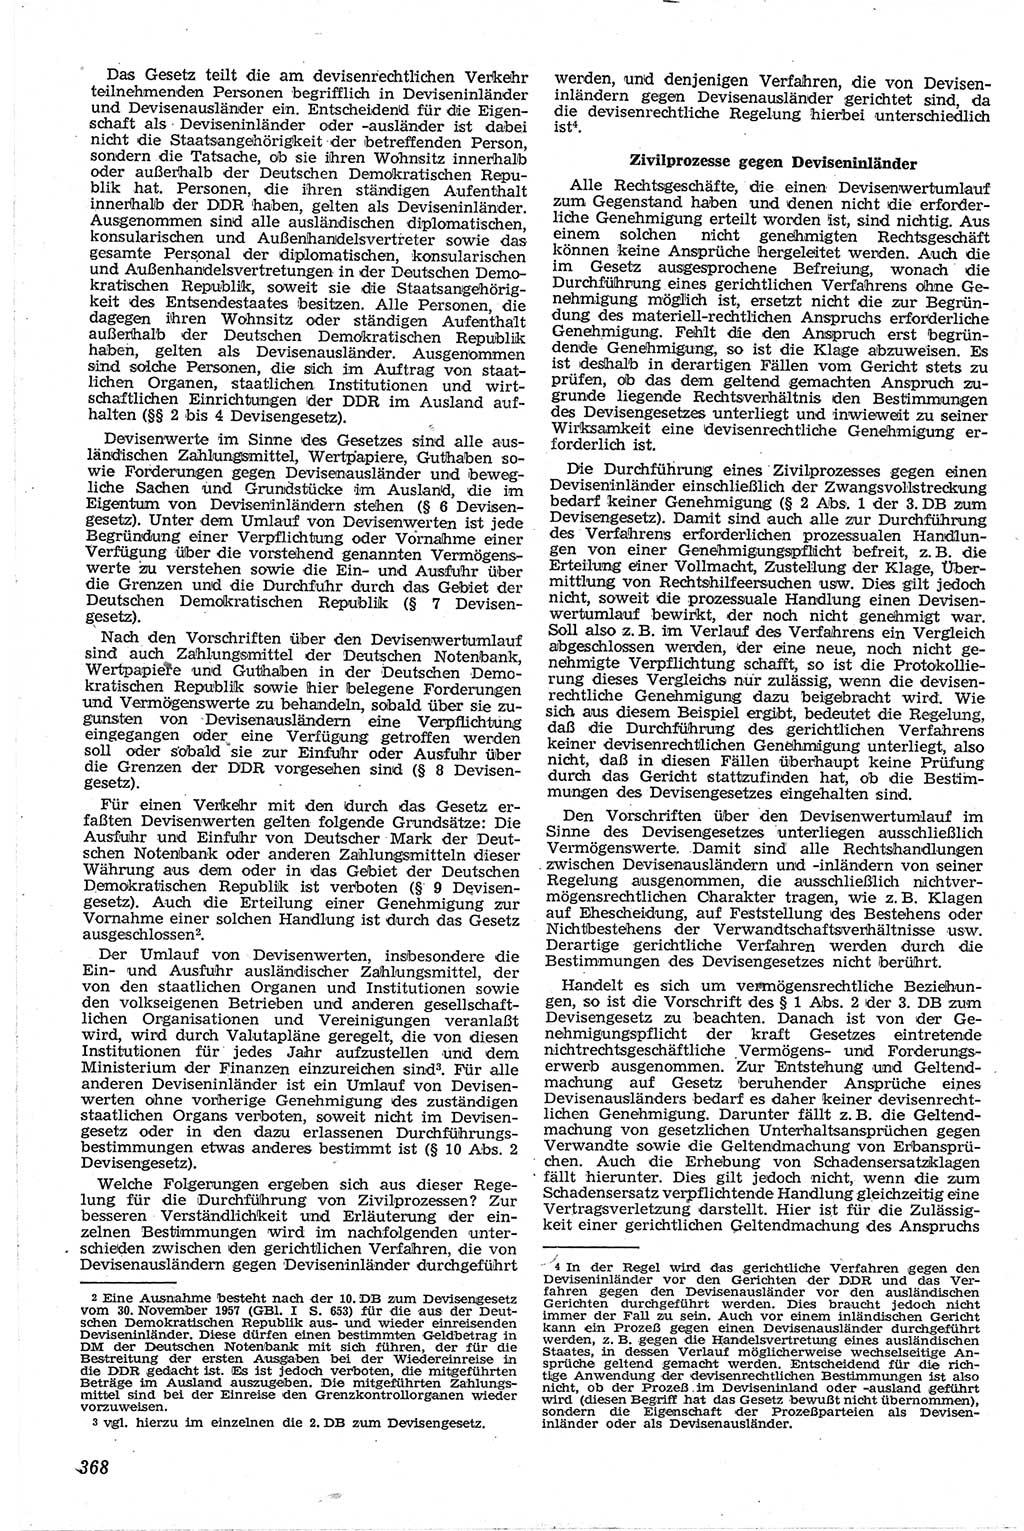 Neue Justiz (NJ), Zeitschrift für Recht und Rechtswissenschaft [Deutsche Demokratische Republik (DDR)], 13. Jahrgang 1959, Seite 368 (NJ DDR 1959, S. 368)